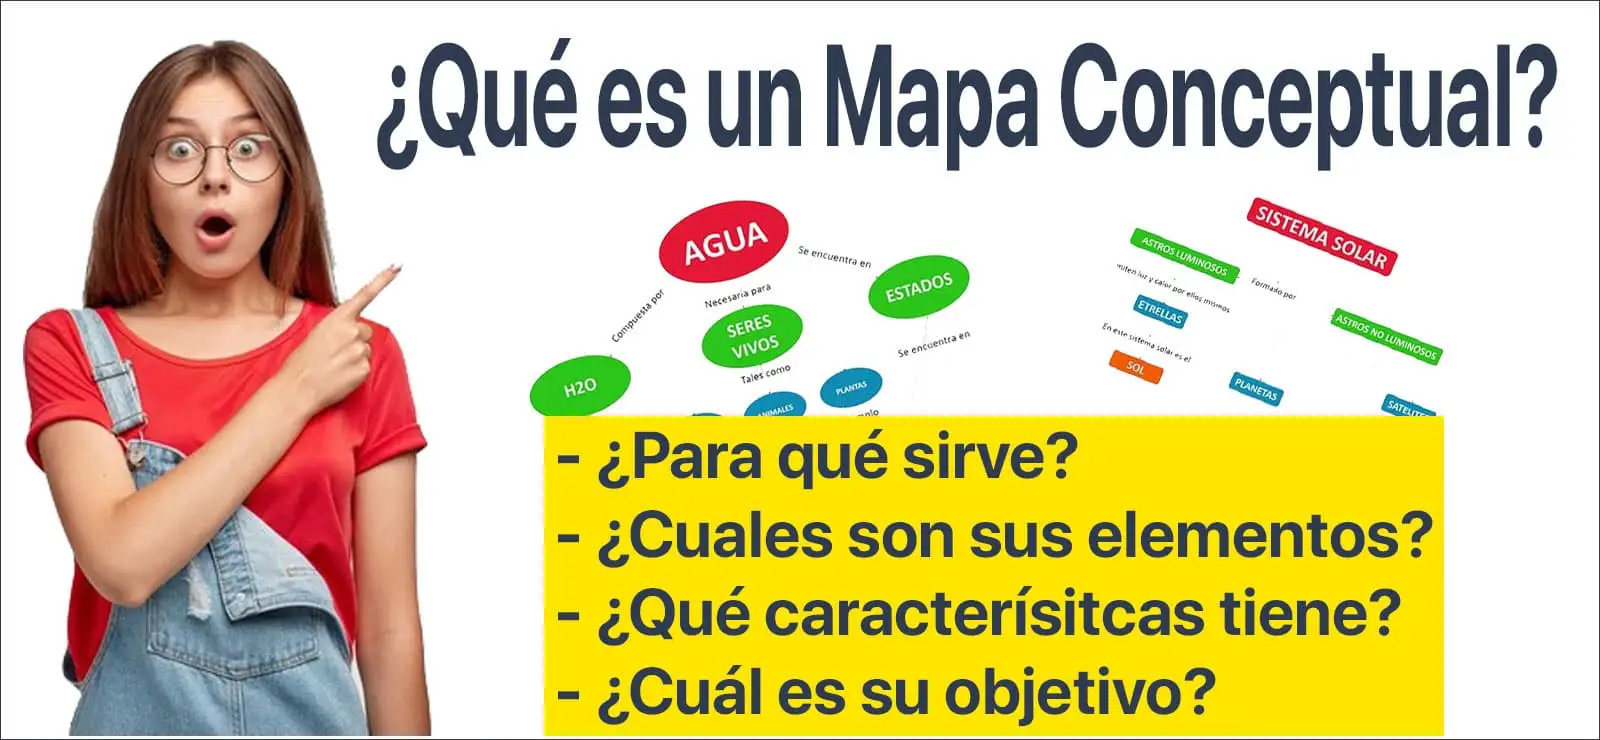 ¿Qué es un mapa conceptual? ¿Para que sirve? - Elementos y Características | Sitio Web Oficial mapaconceptual.com.es